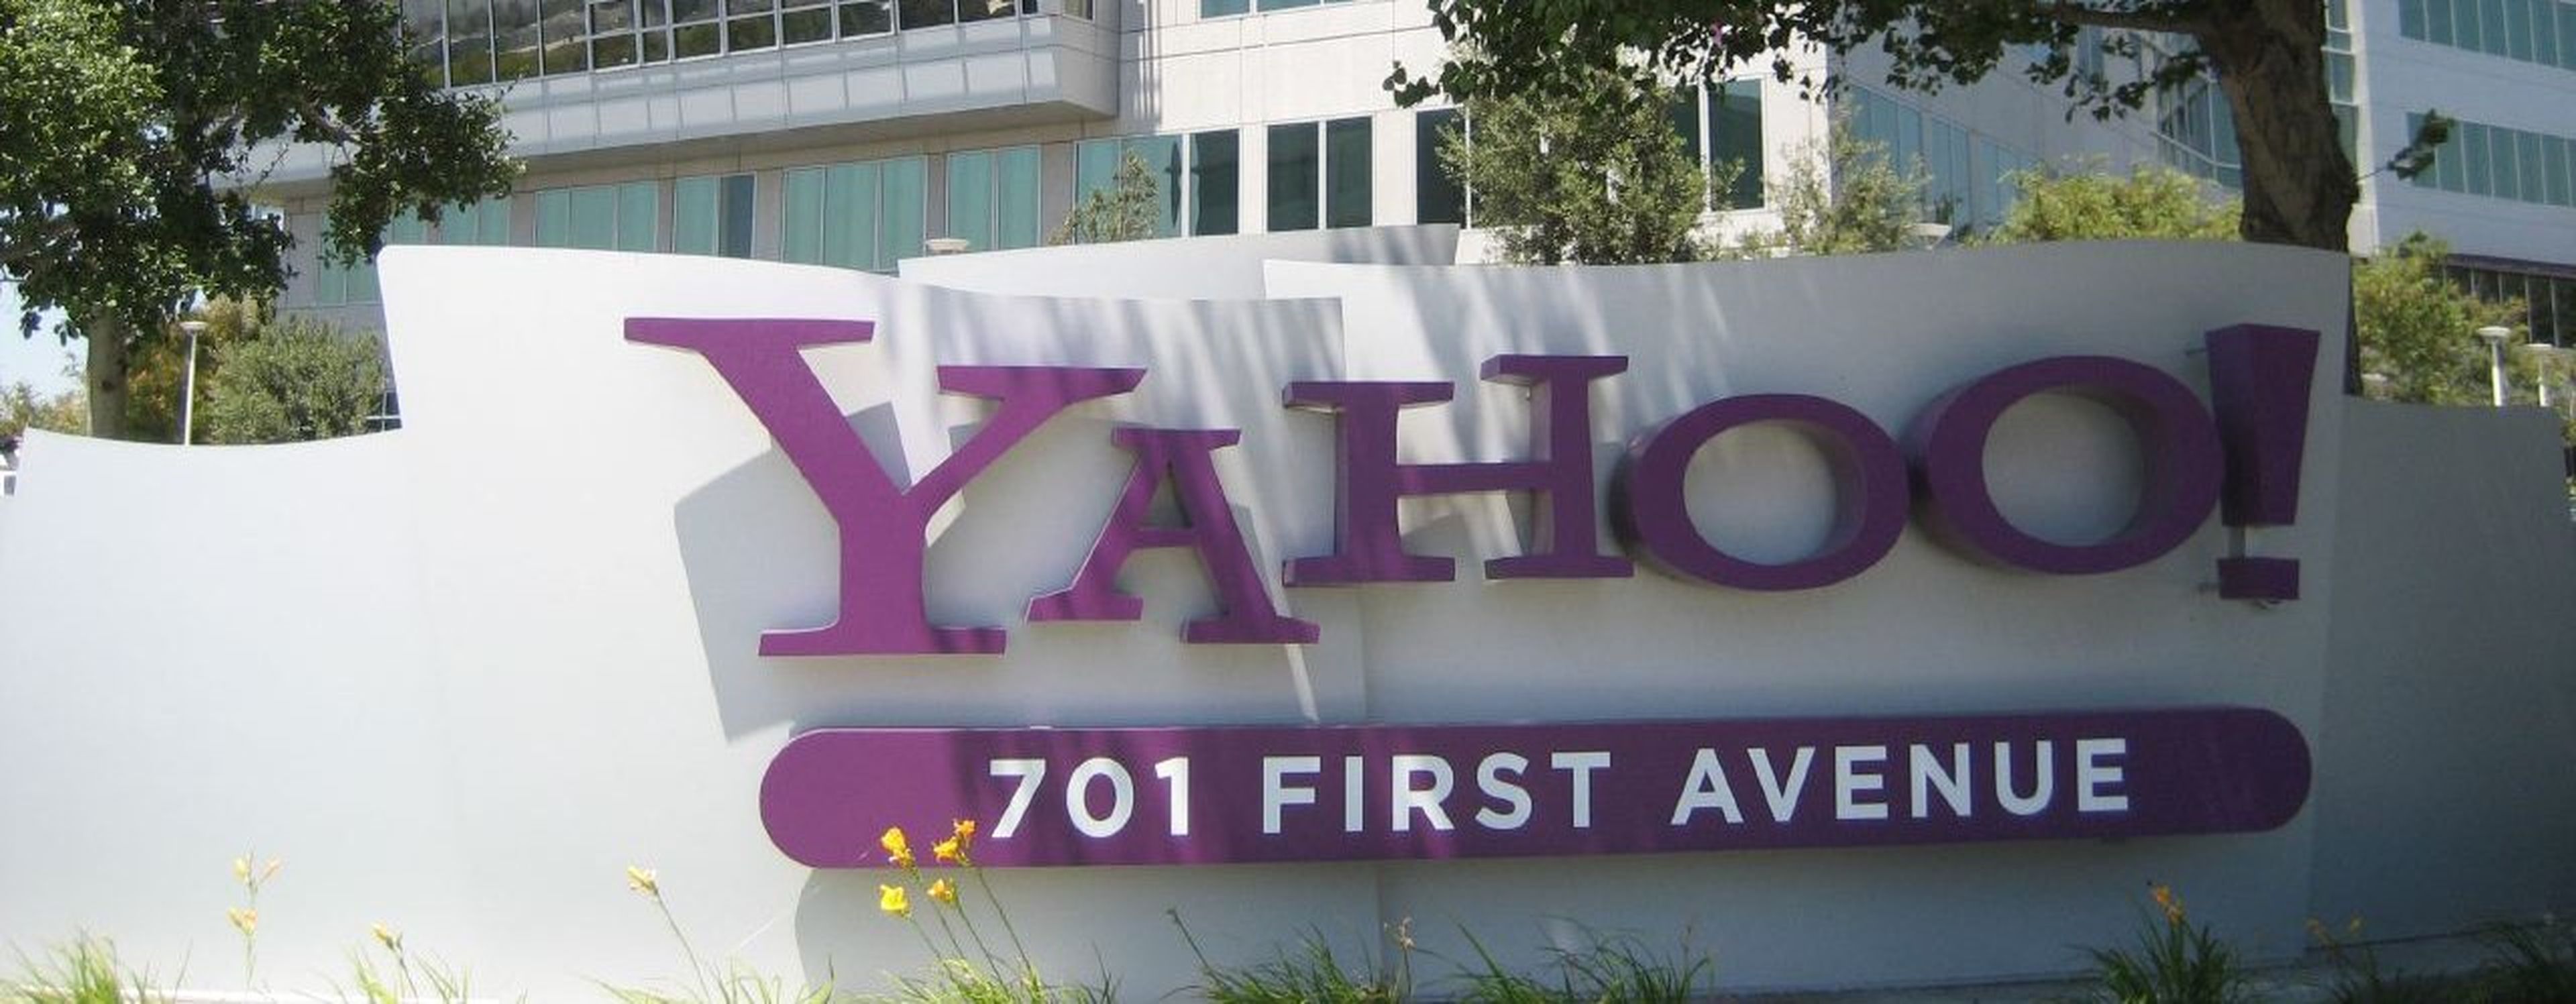 Yahoo compra Tomfoolery comunicación social empresarial